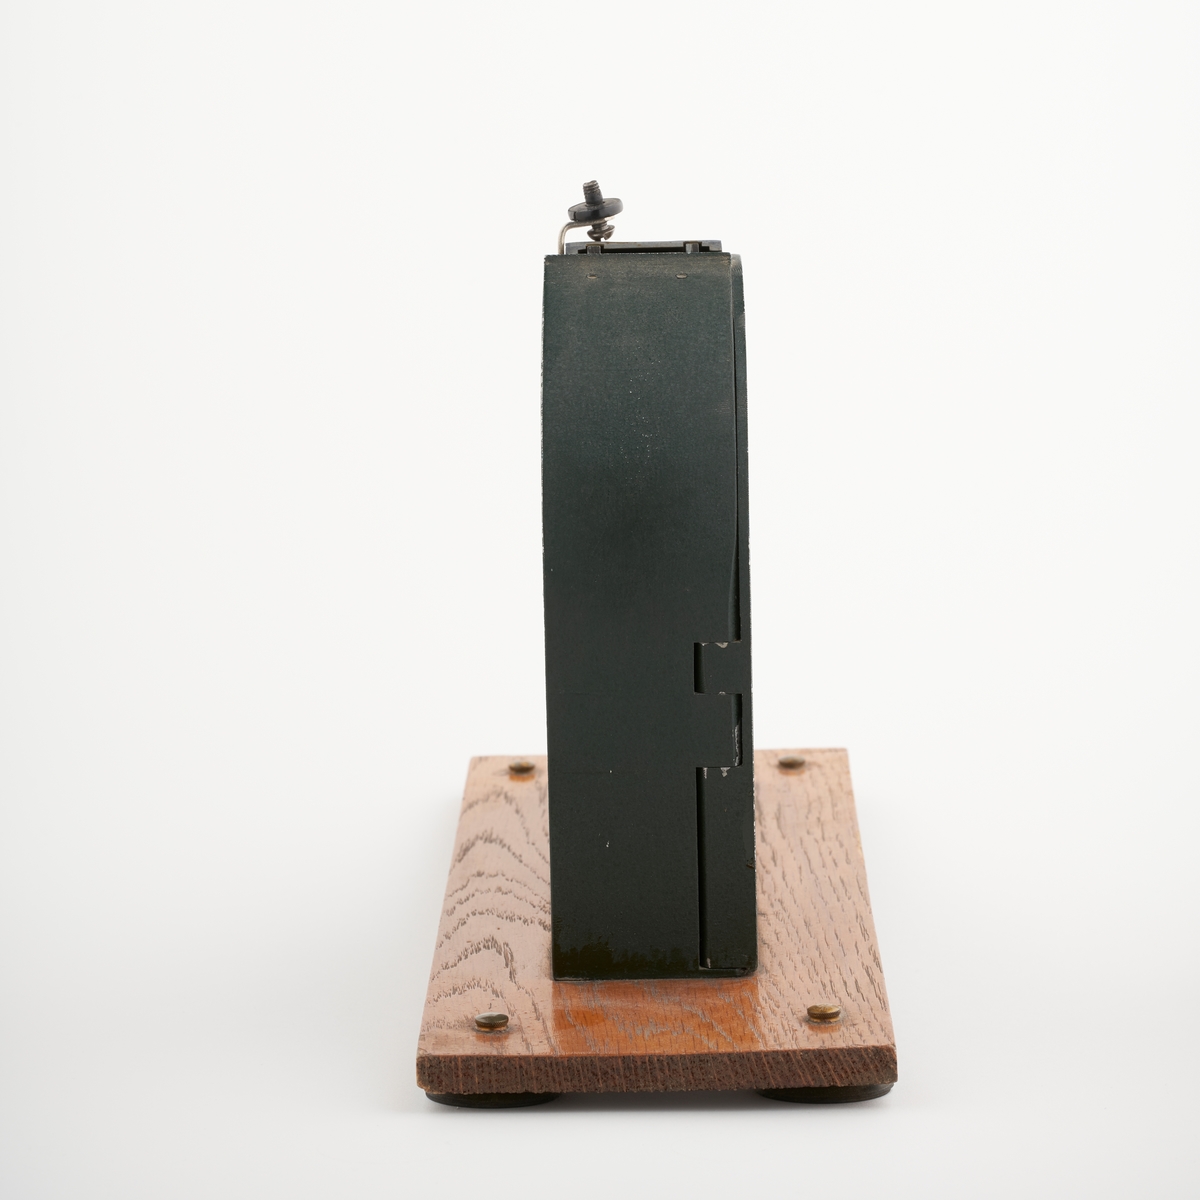 Kølappmaskin montert på en treplate med gummiføtter. Ved å trekke i håndtaket kom en kølapp ut. 

NAV-samlingen er en gruppe av gjenstander som har vært anvendt på sosialkontoret (Aetat - NAV) i Skedsmo kommune.